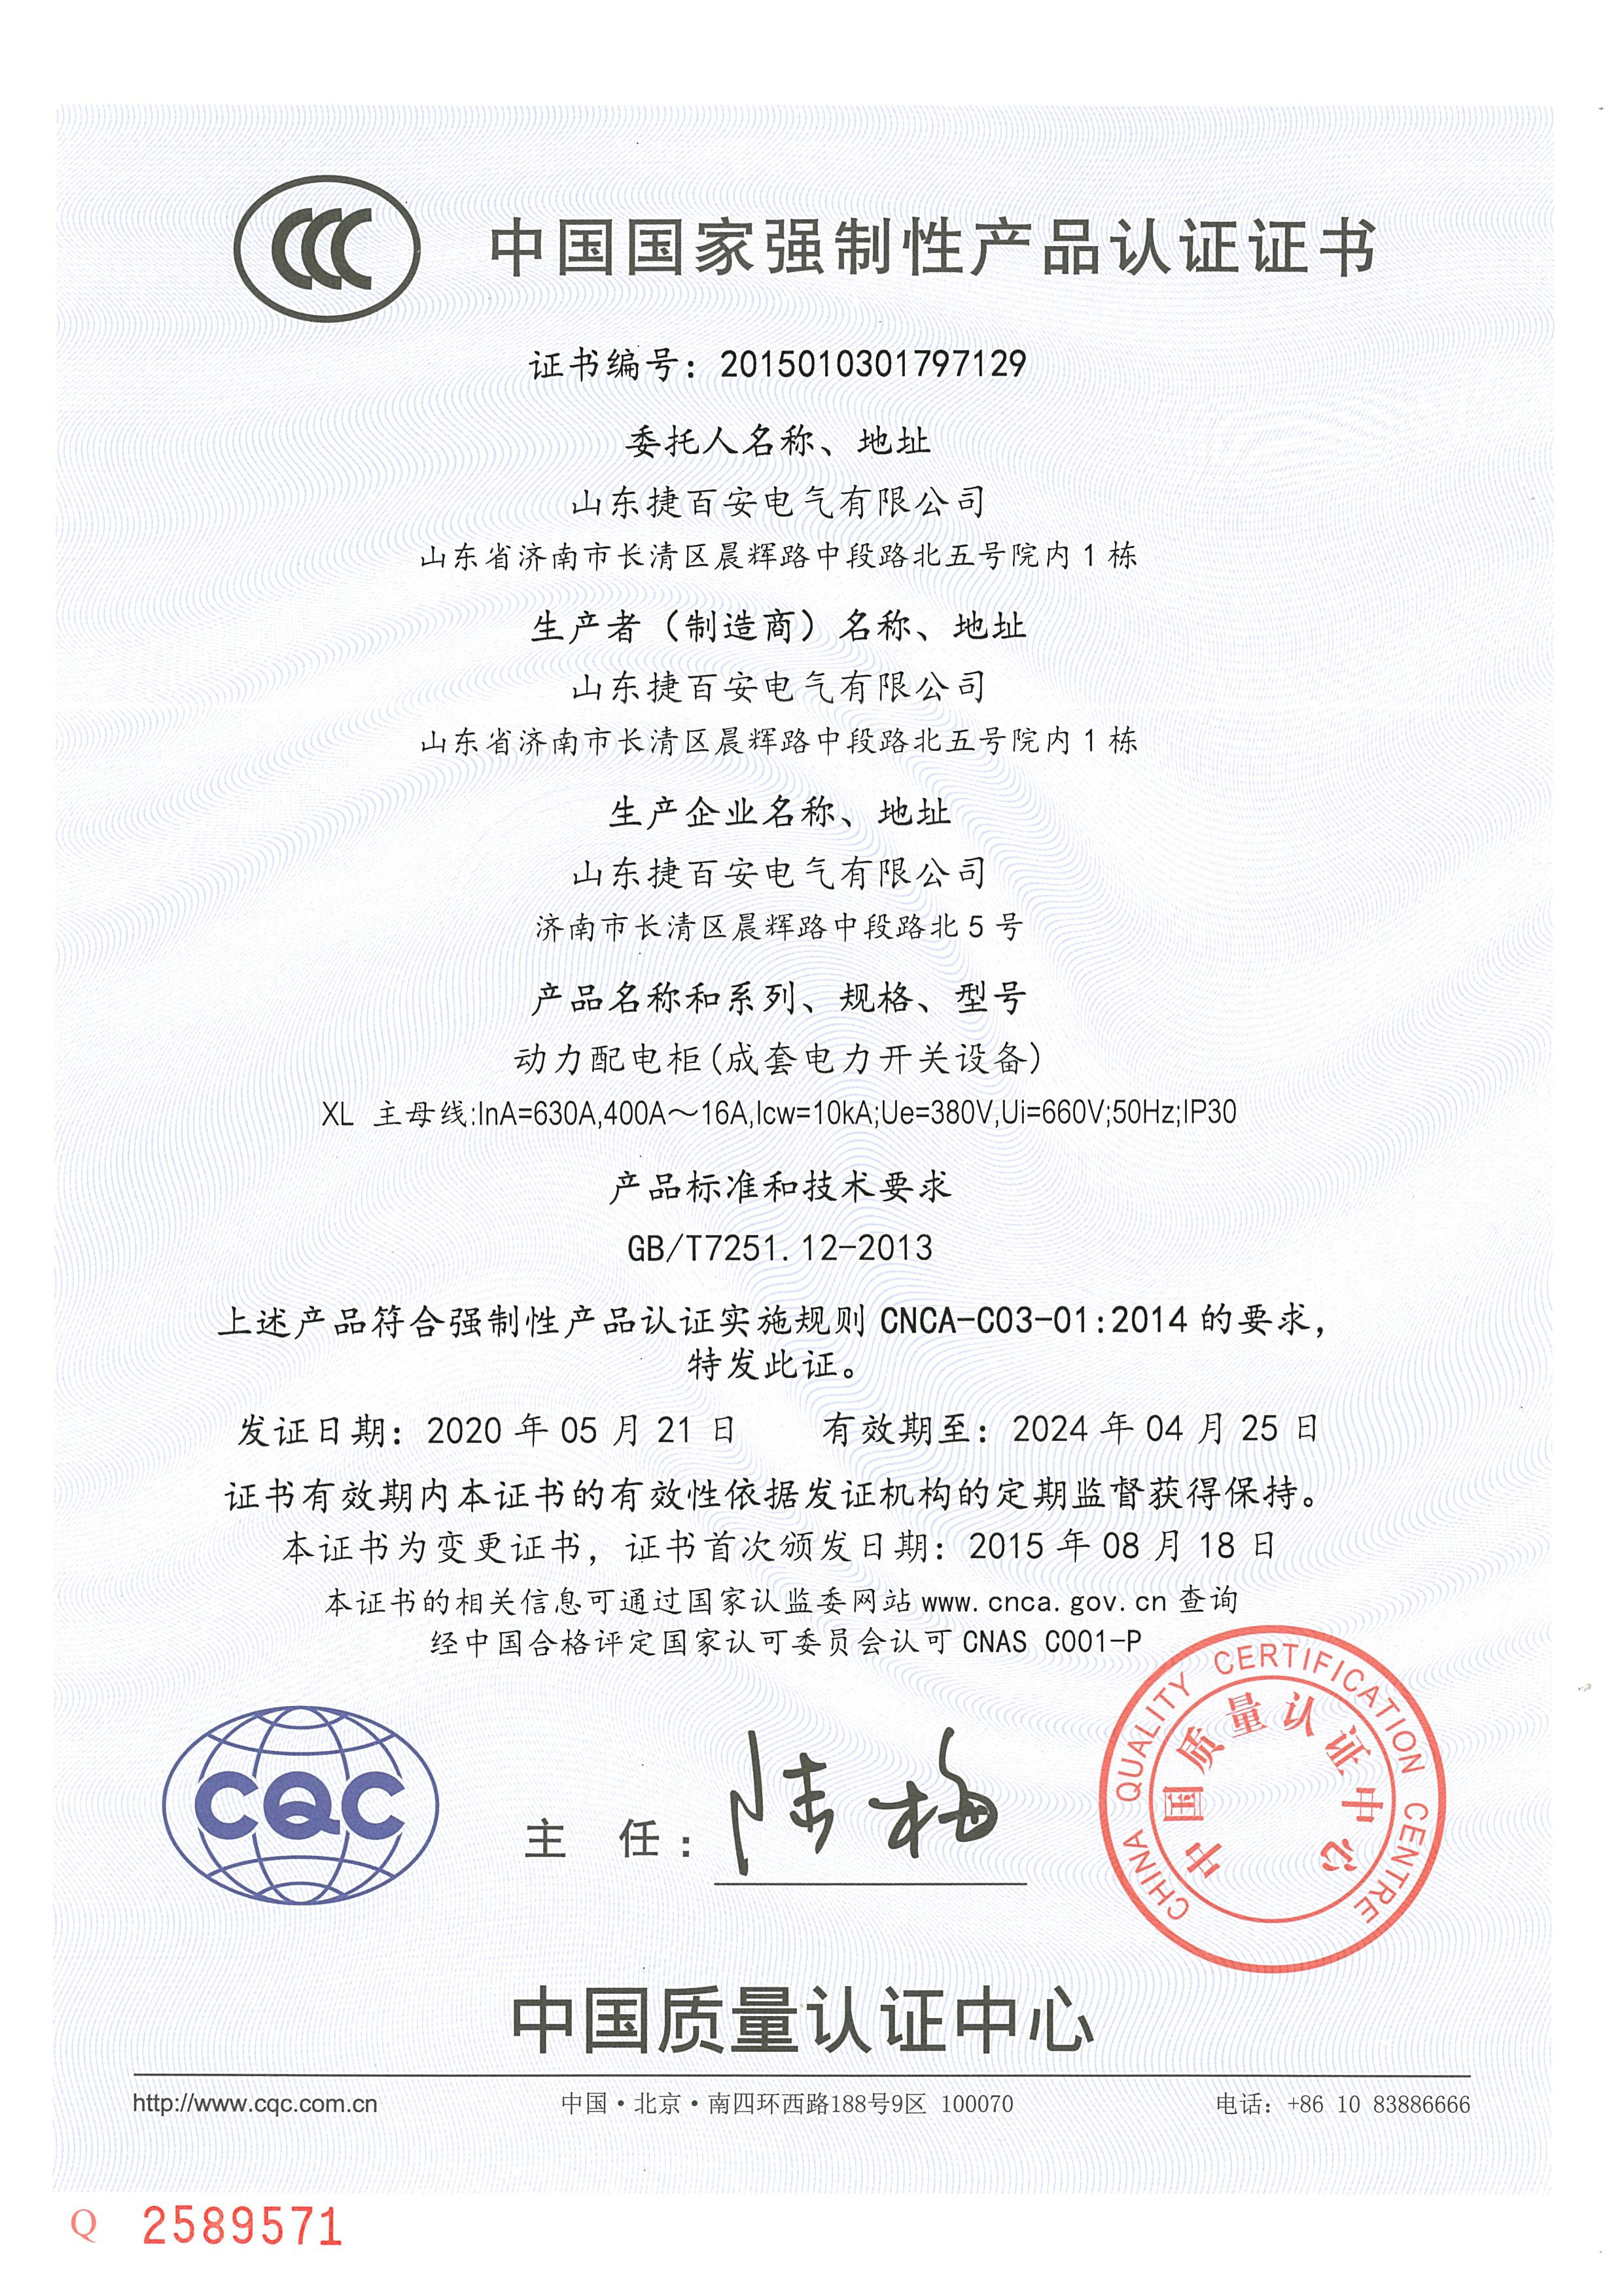 XL系列CCC认证证书